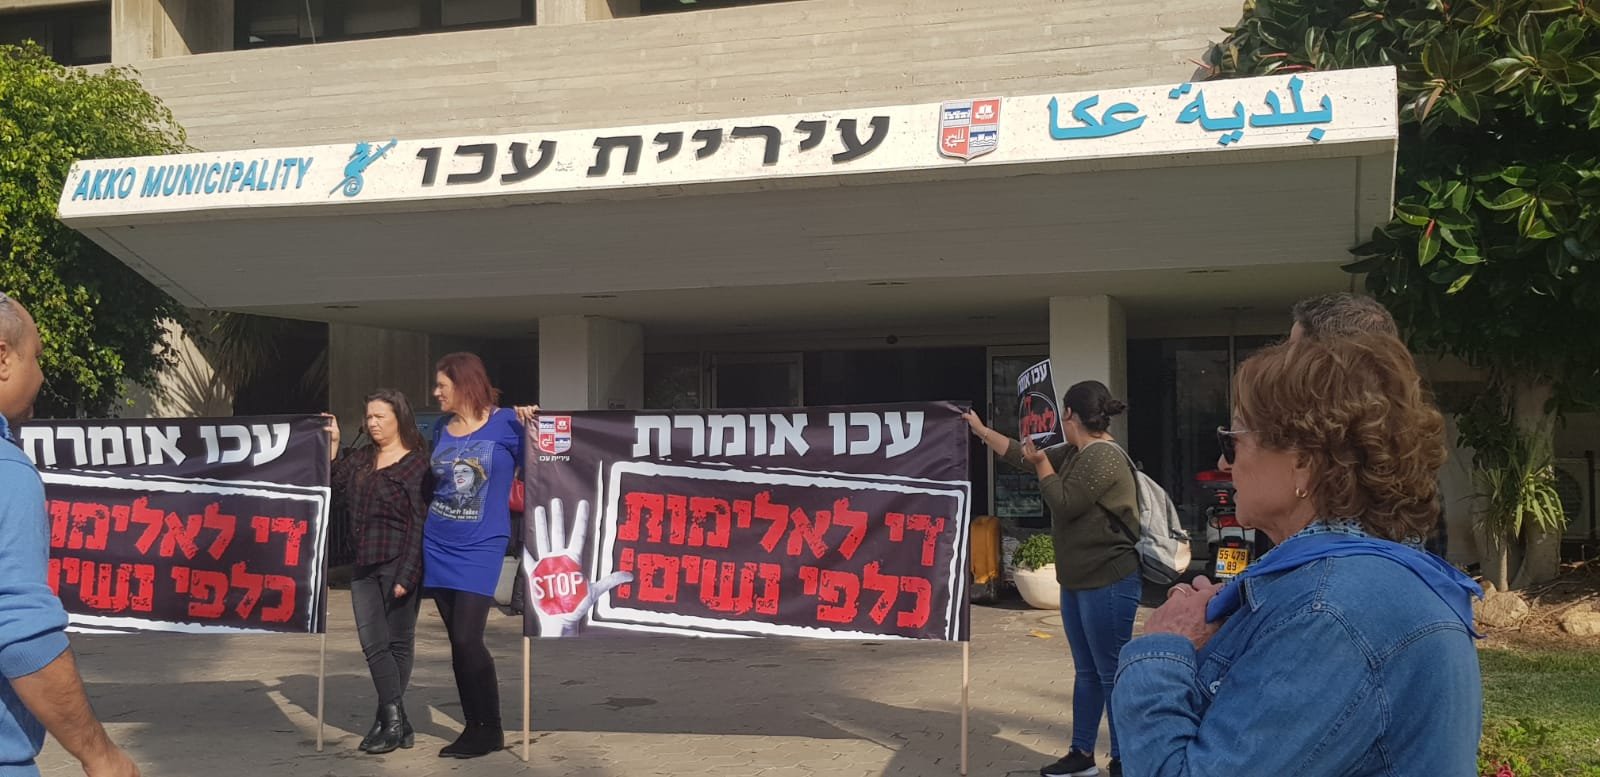 عكا: البلدية تقيم مظاهرة بلافتات ضد العنف باللغة العبرية وتهمش اللغة العربية-0